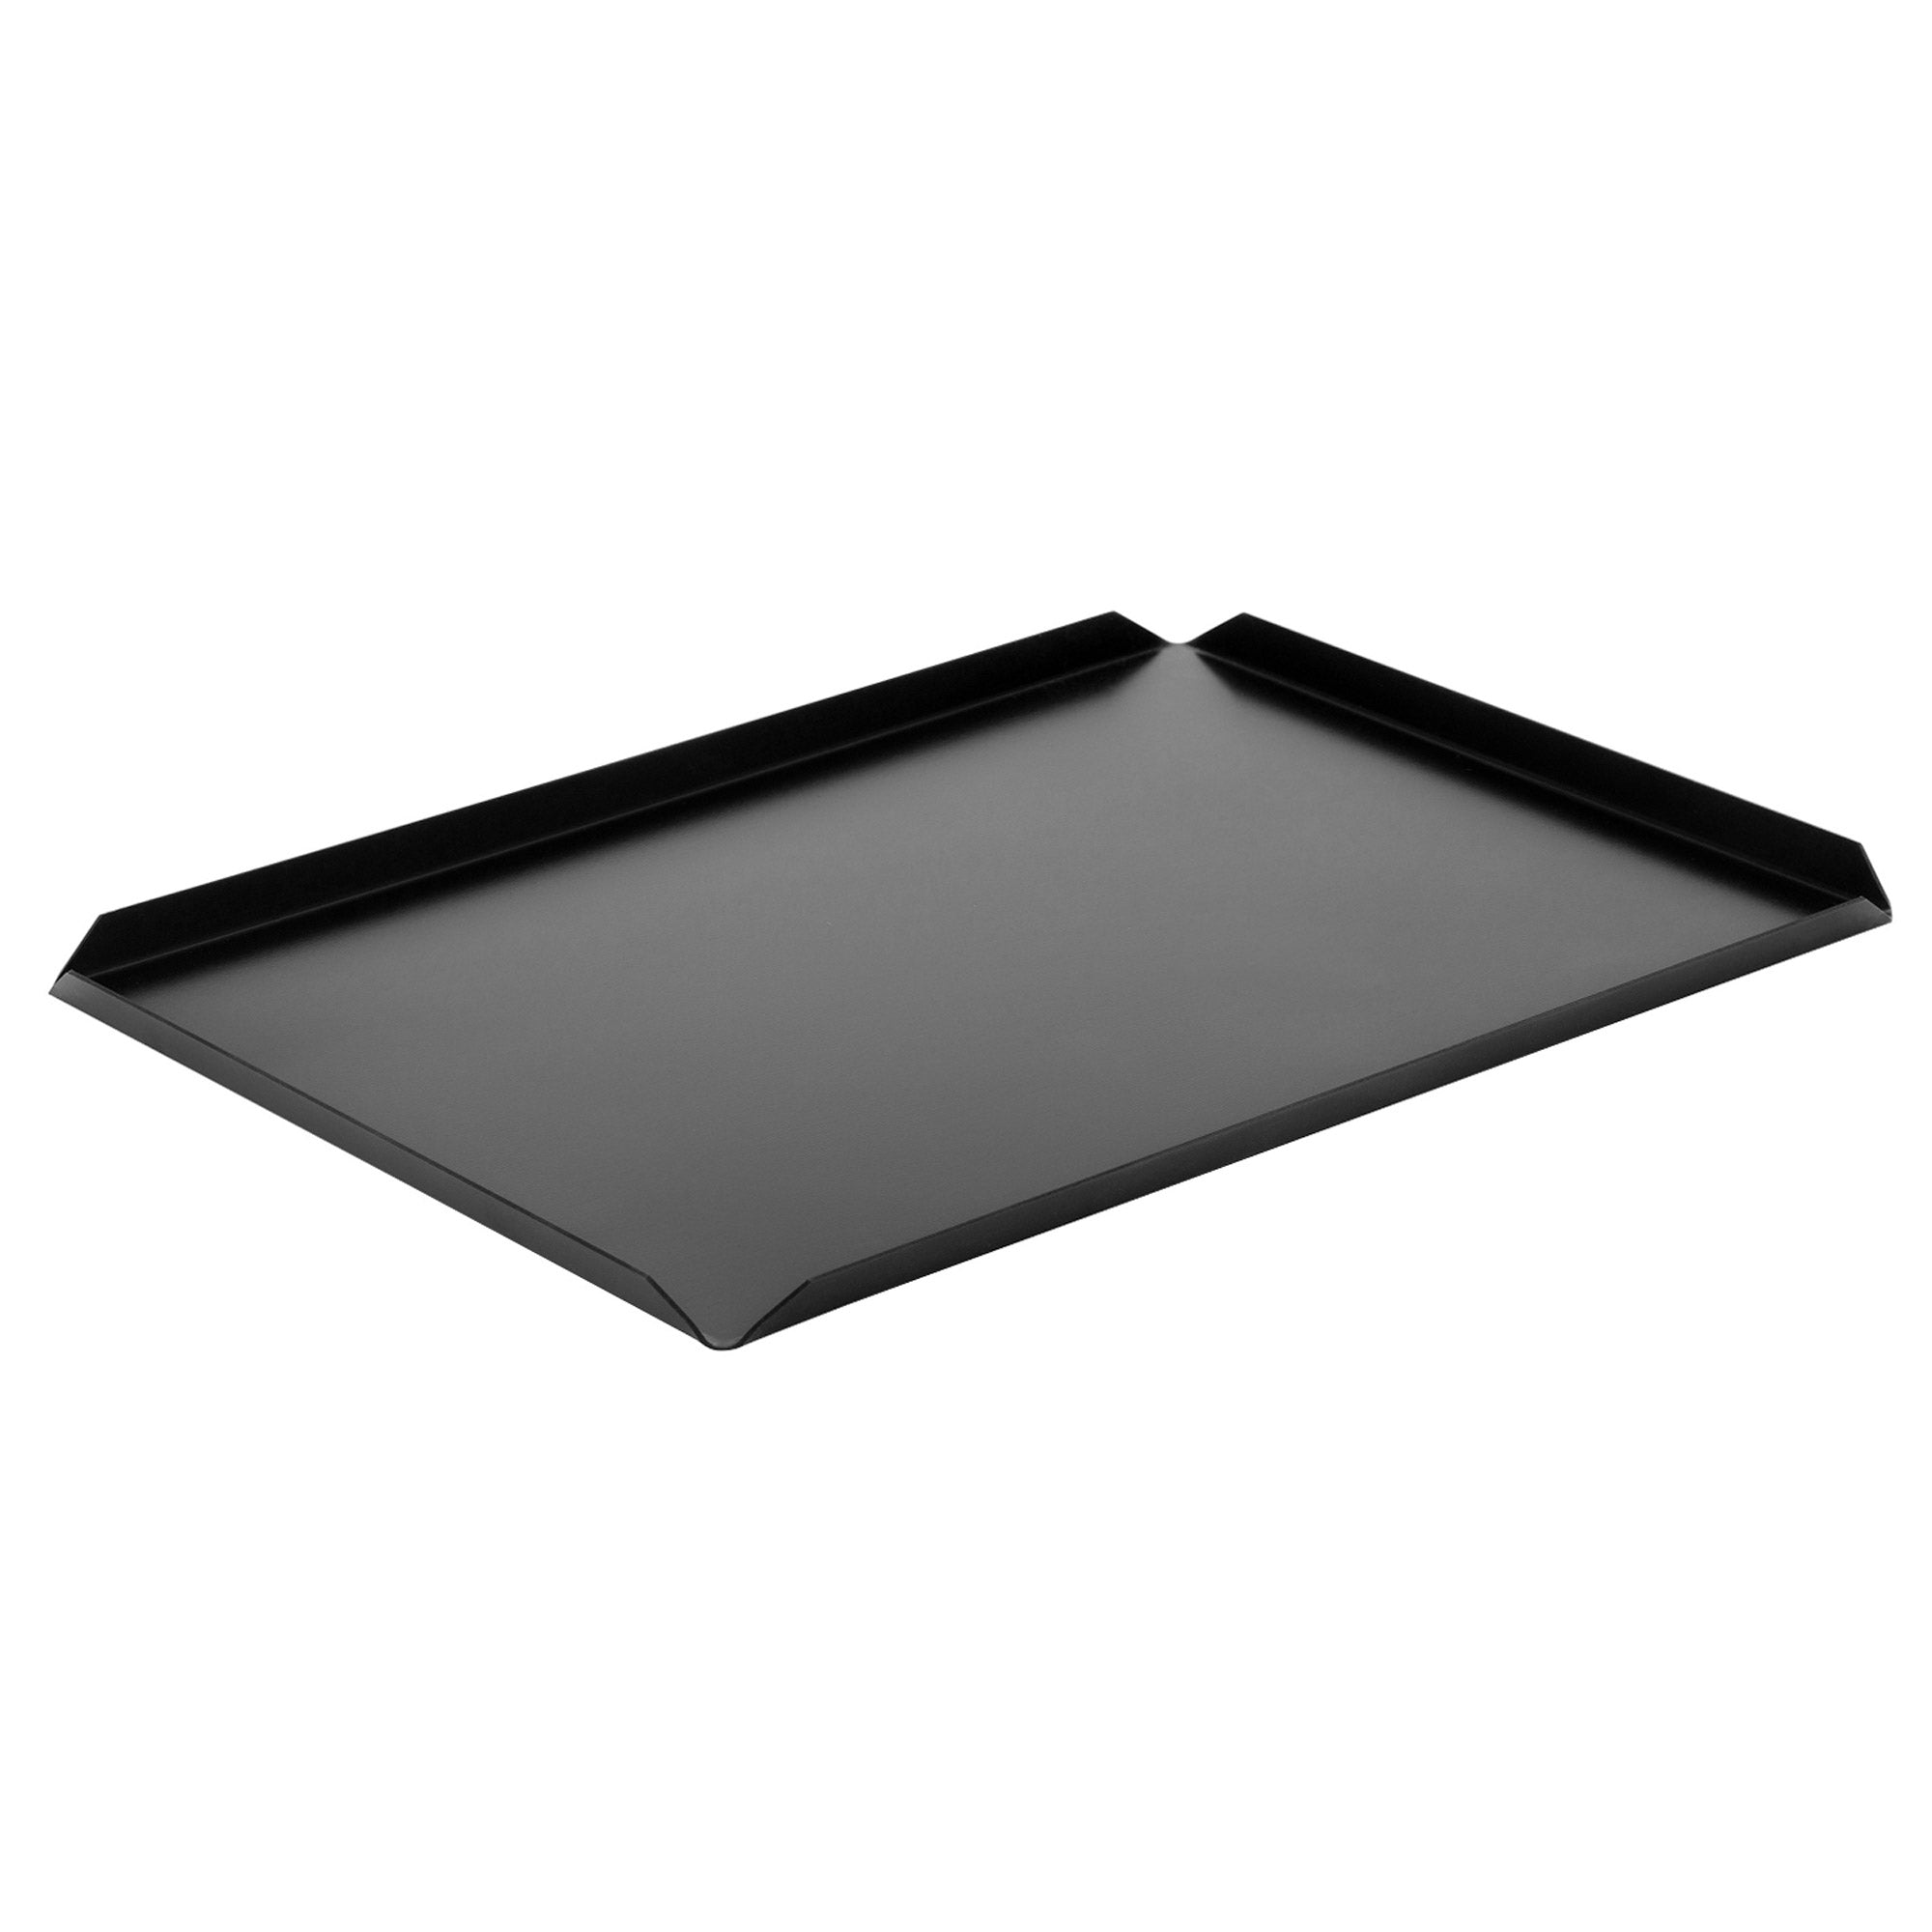 (5 бр.) Алуминиева плоча за сладкарски изделия и презентации - 400 x 250 x 10 мм - черна